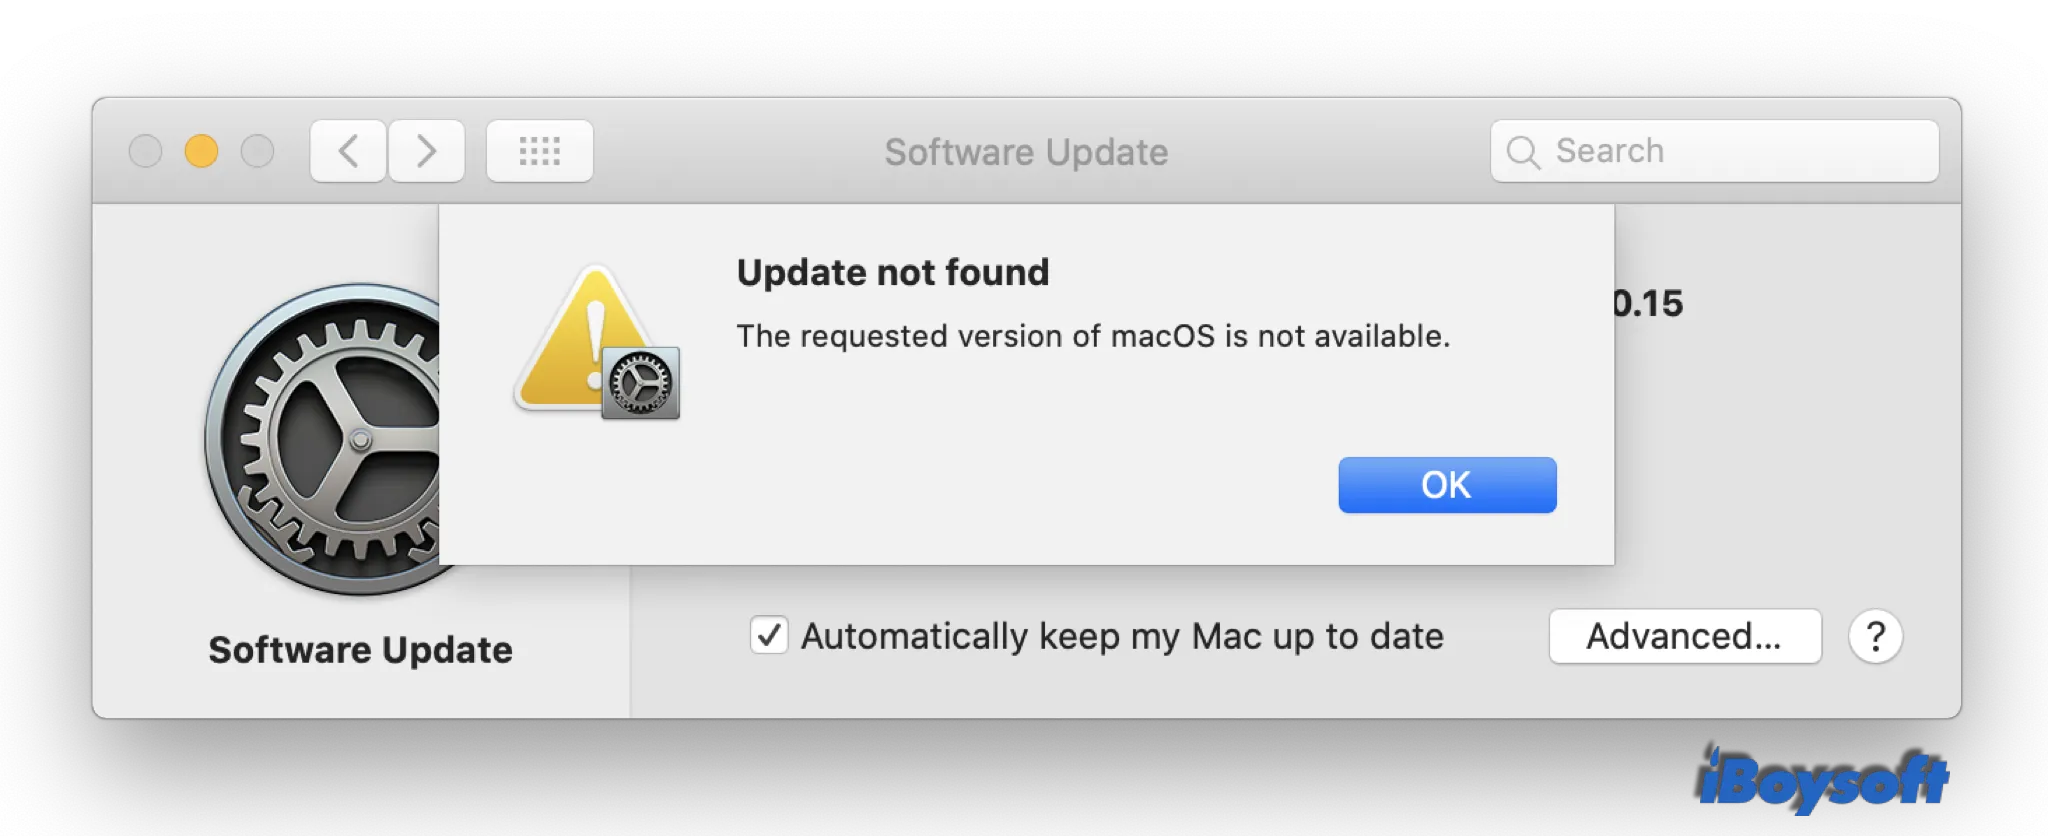 Como corrigir problemas de atualização de aplicativos no Mac
Soluções eficazes para erros de atualização do macOS